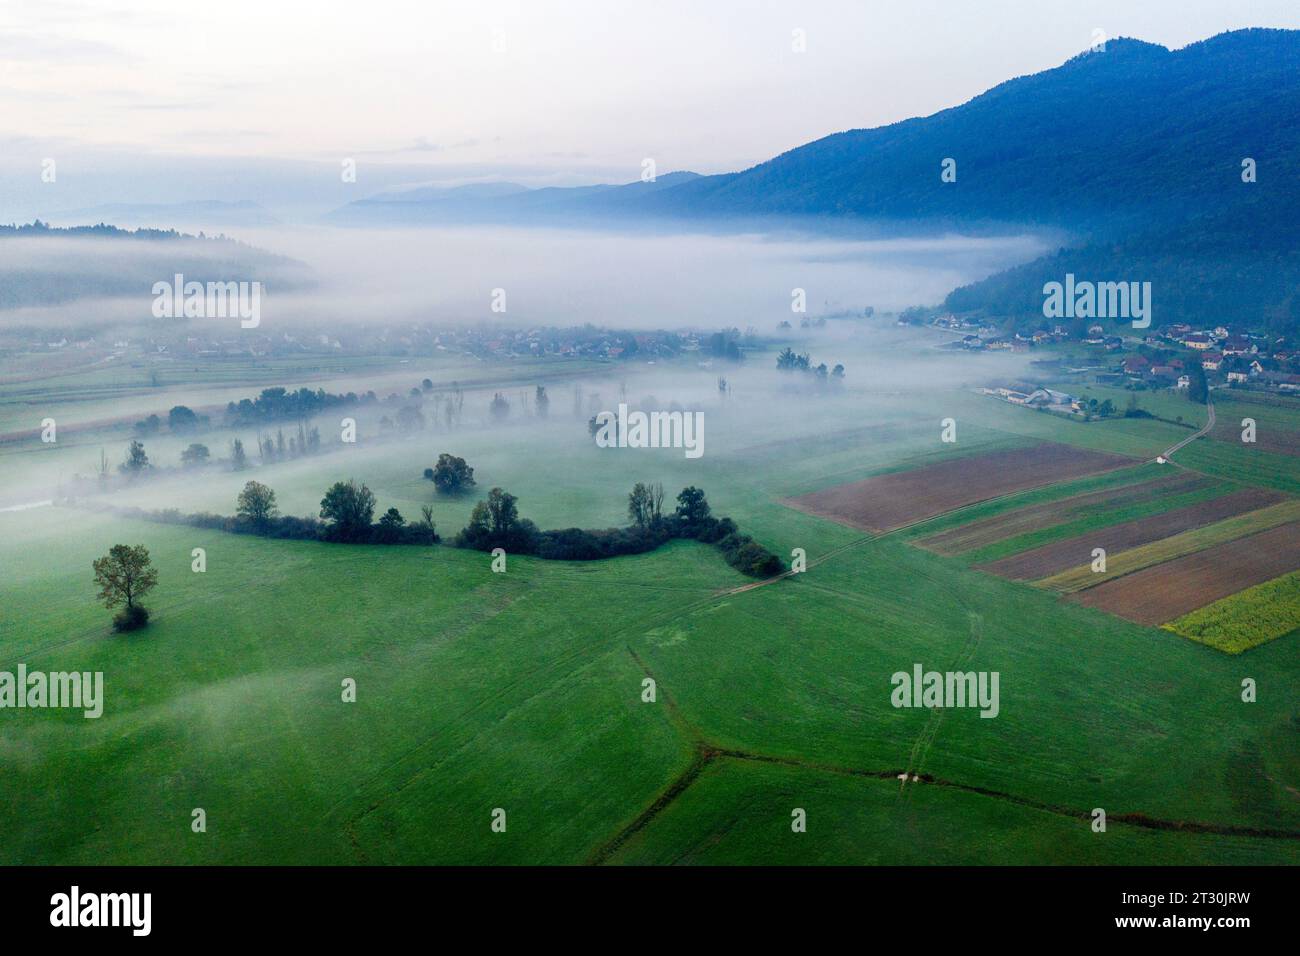 Misty fields near Krka river and Kocevski rog forest on a misty summer morning near Dolenjske toplice spa town, Slovenia Stock Photo